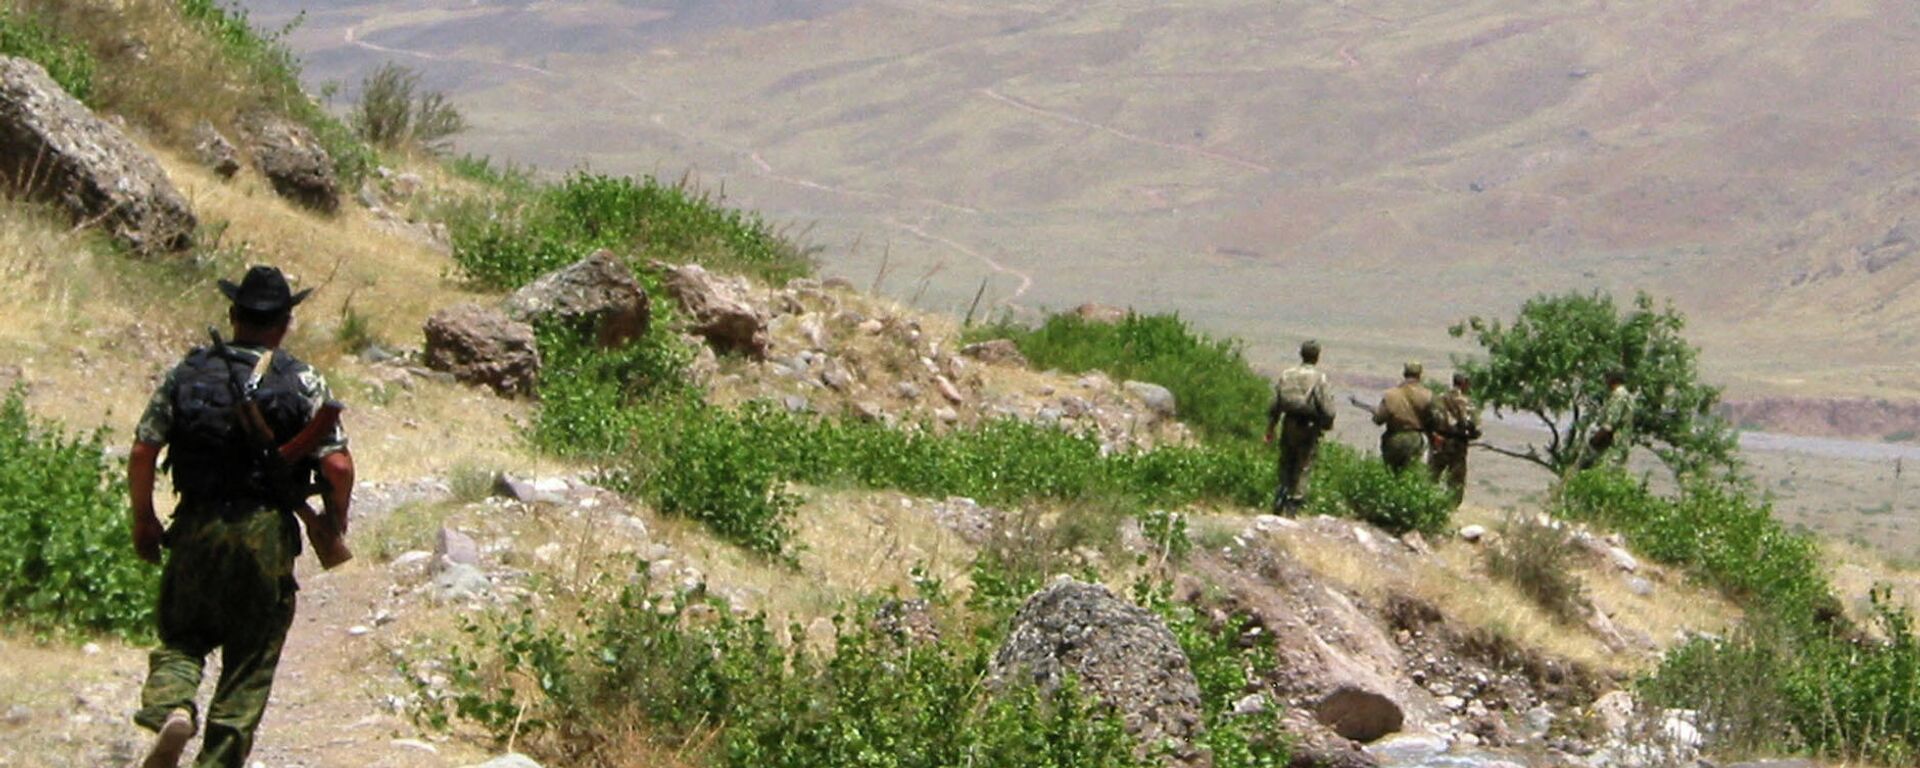 Таджикско-афганская граница  - Sputnik Узбекистан, 1920, 09.09.2021